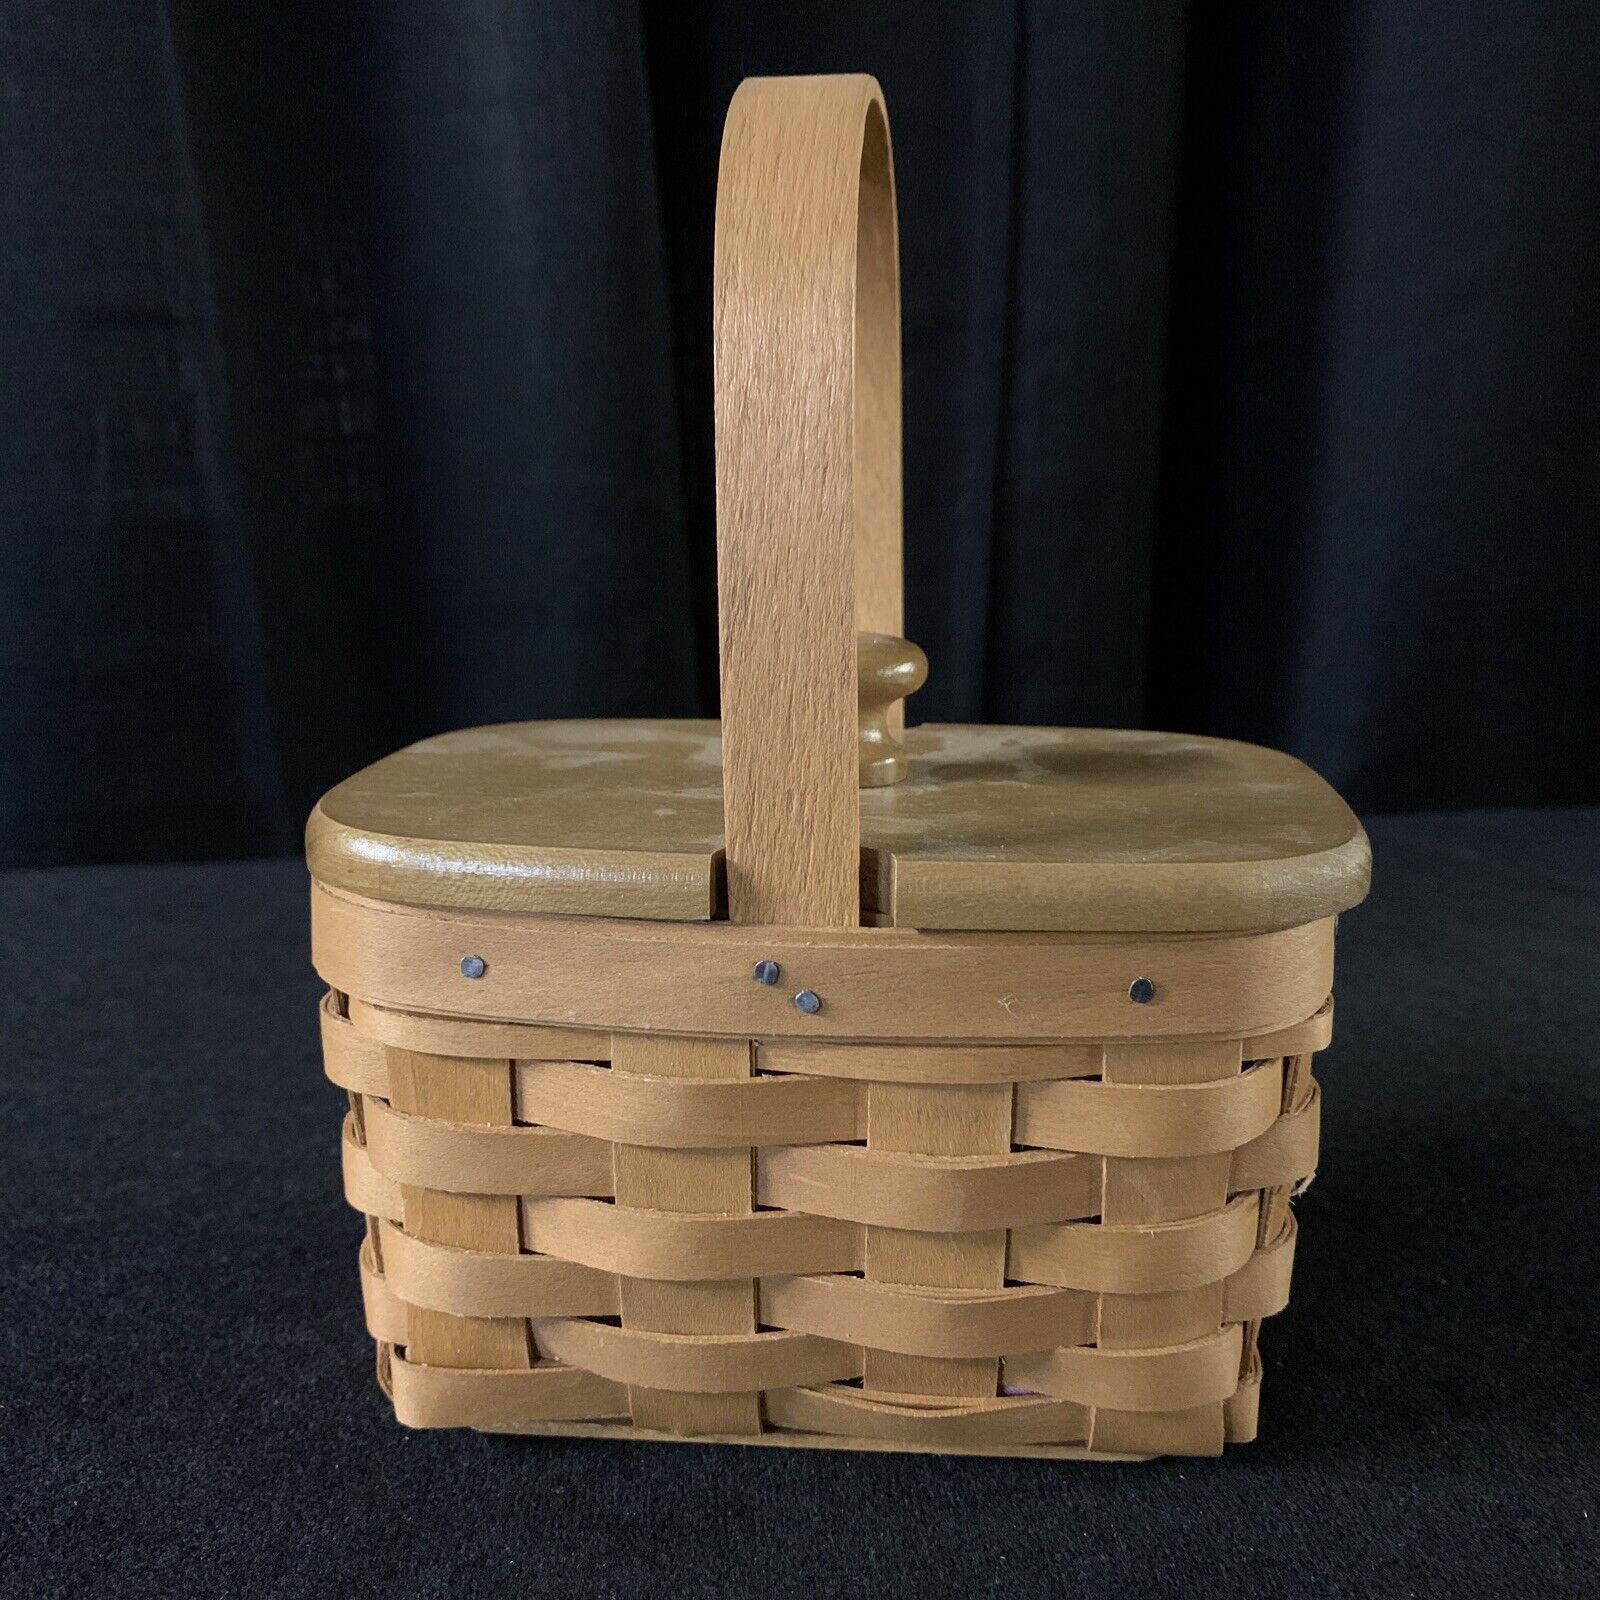 Longaberger 2014 Horizon of Hope Basket with Wood Lid 5.5 x 3.75 x 3